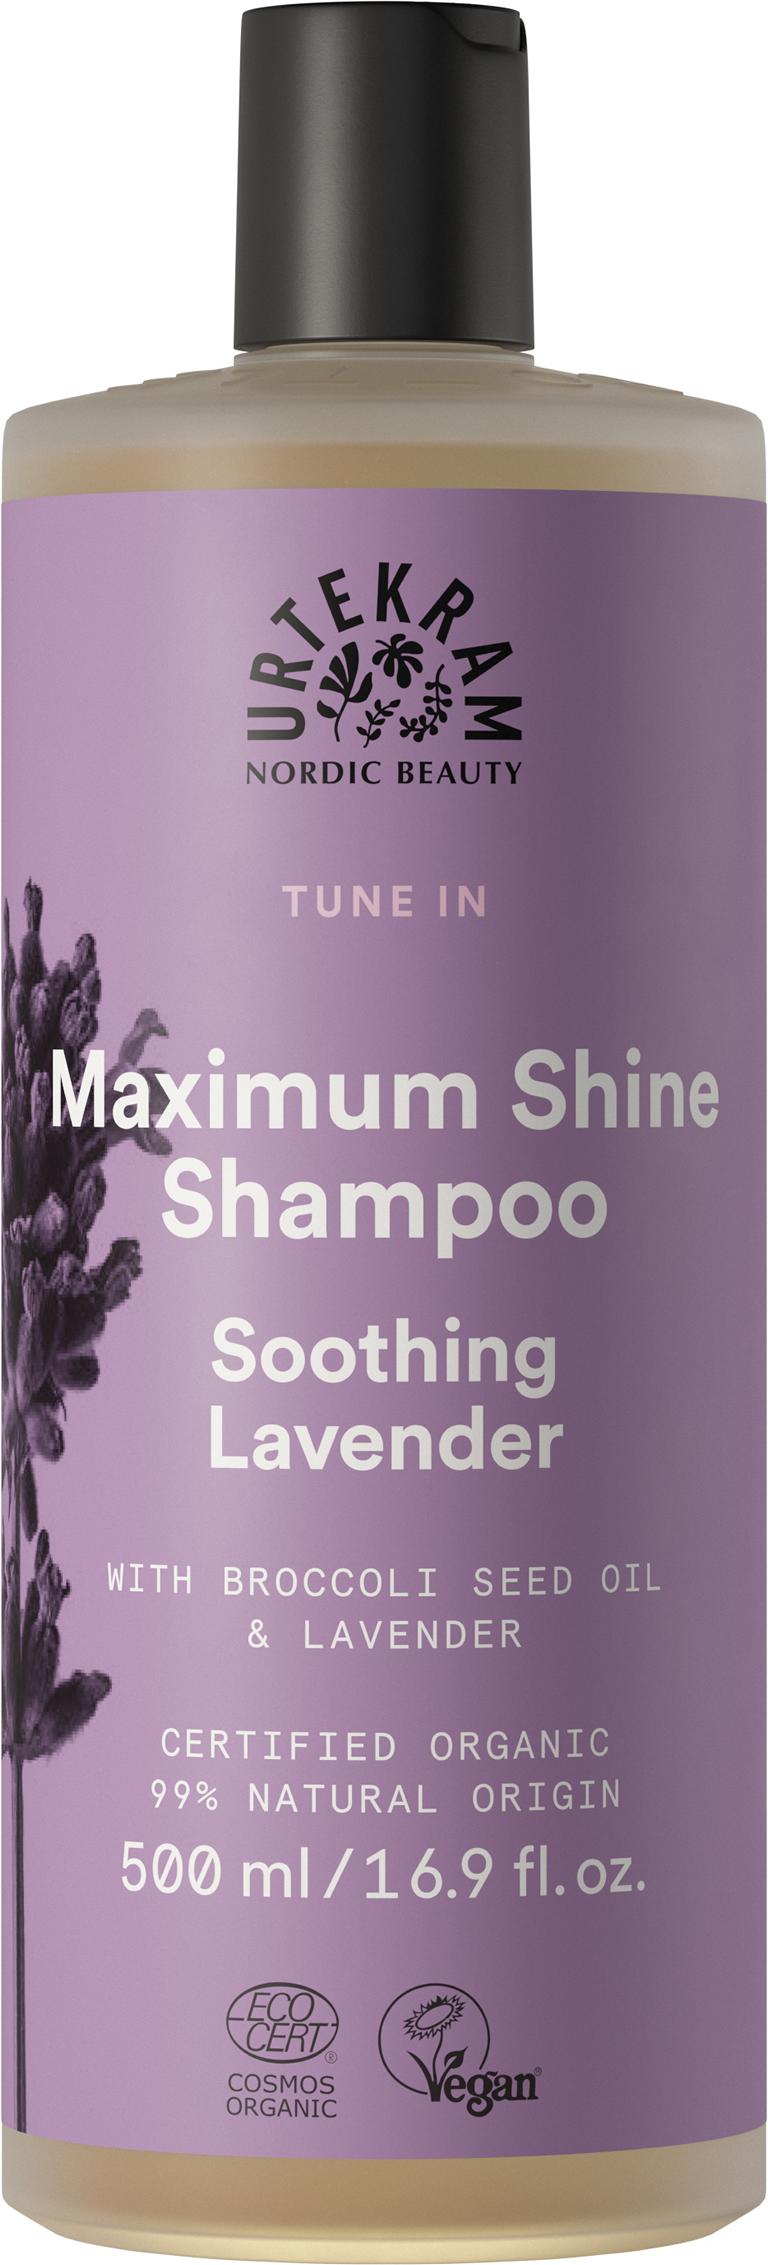 Urtekram Soothing Lavender Shampoo 500 ml 500 ml